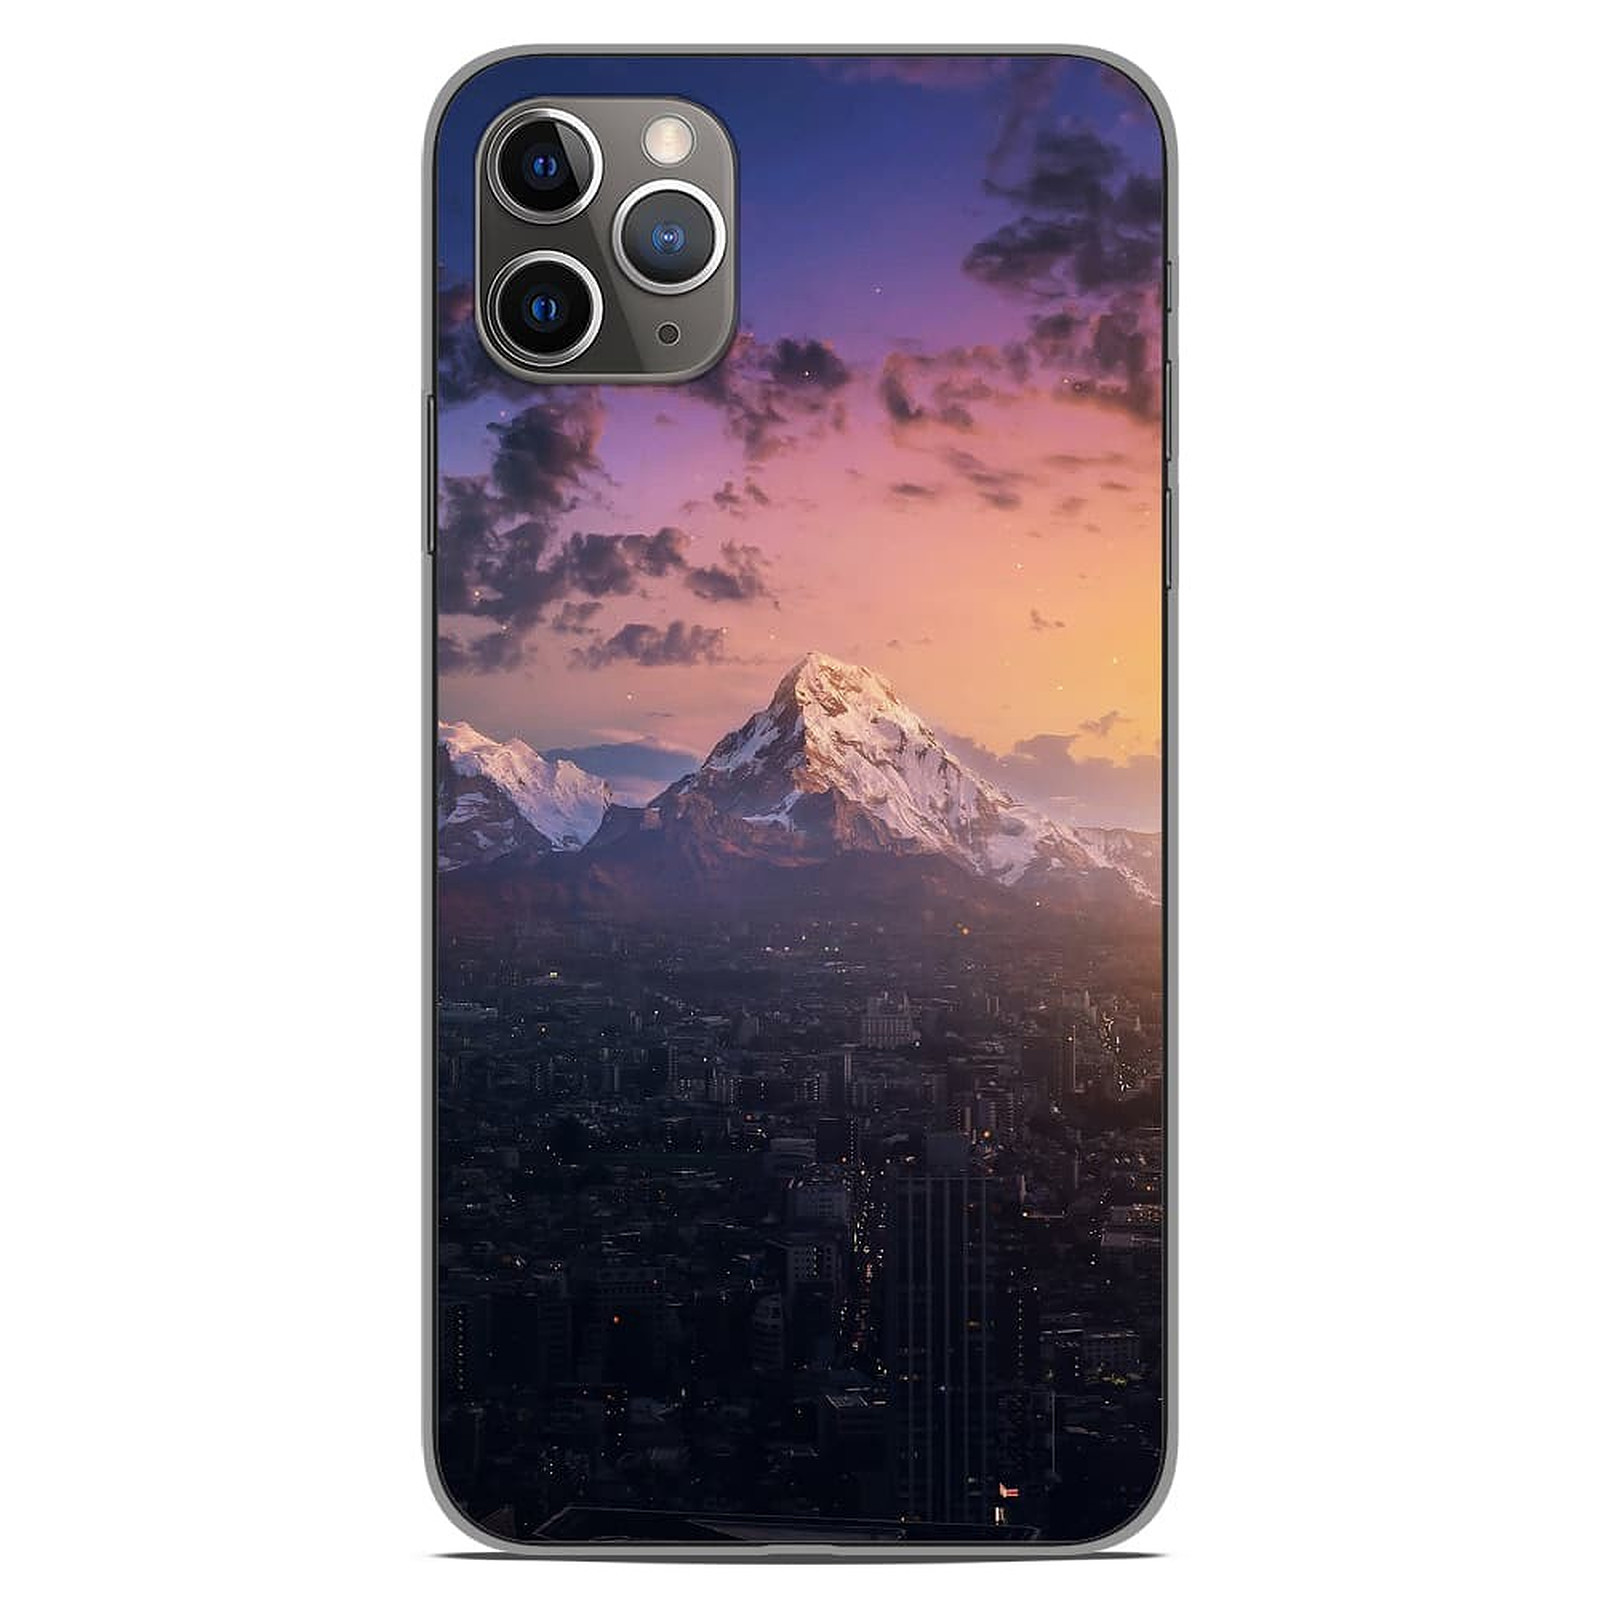 1001 Coques Coque silicone gel Apple iPhone 11 Pro Max motif Montagnes urbaines - Coque telephone 1001Coques